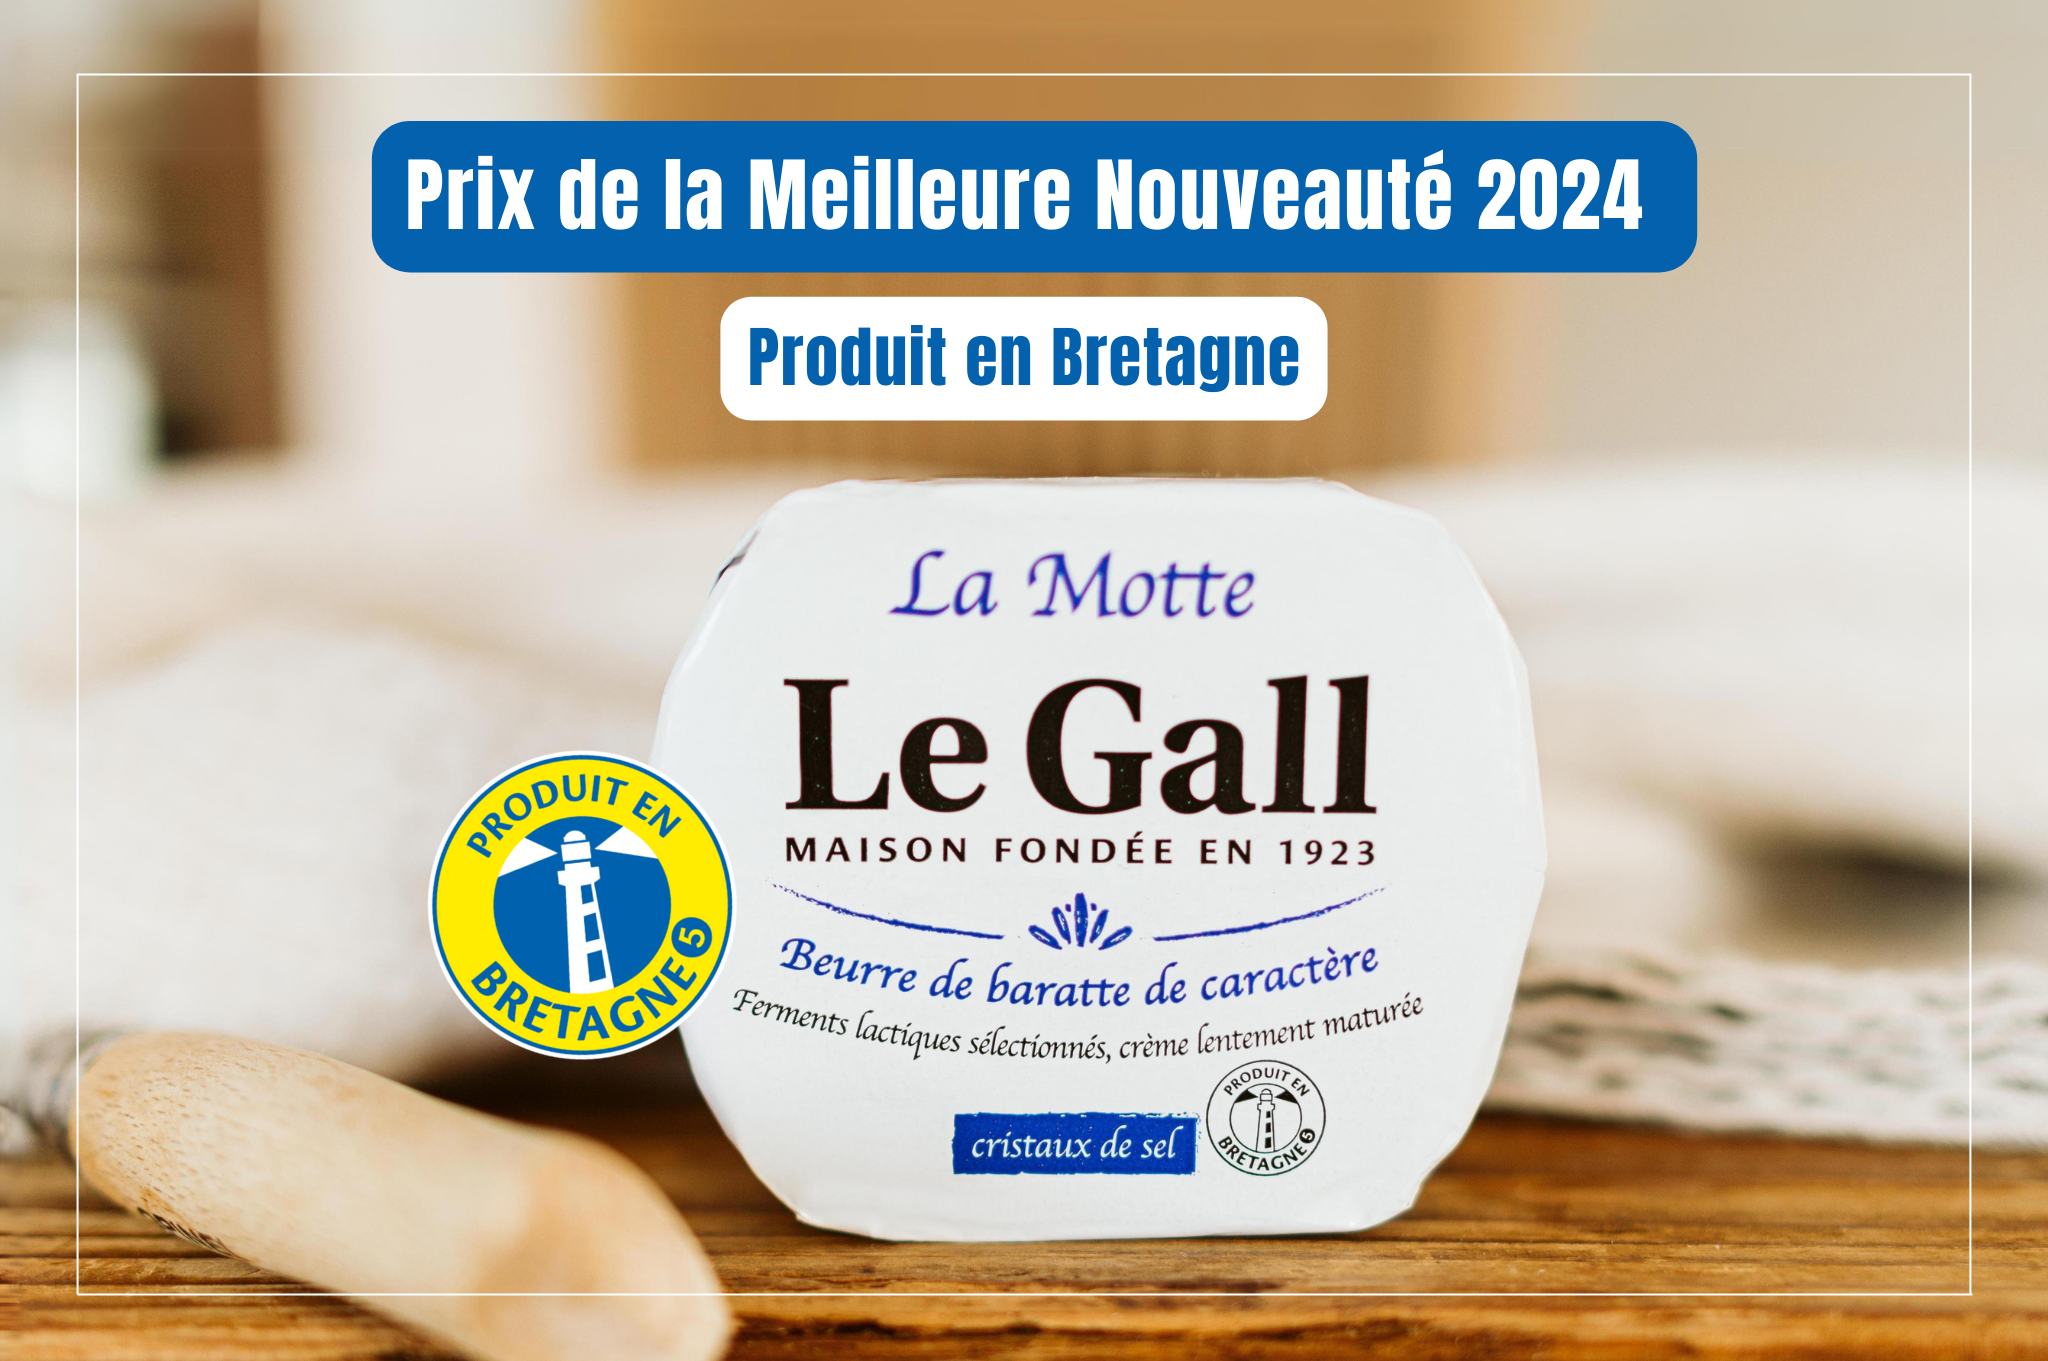 La Motte aux Cristaux de Sel de Guérande LE GALL : meilleure nouveauté Produit en Bretagne 2024 !